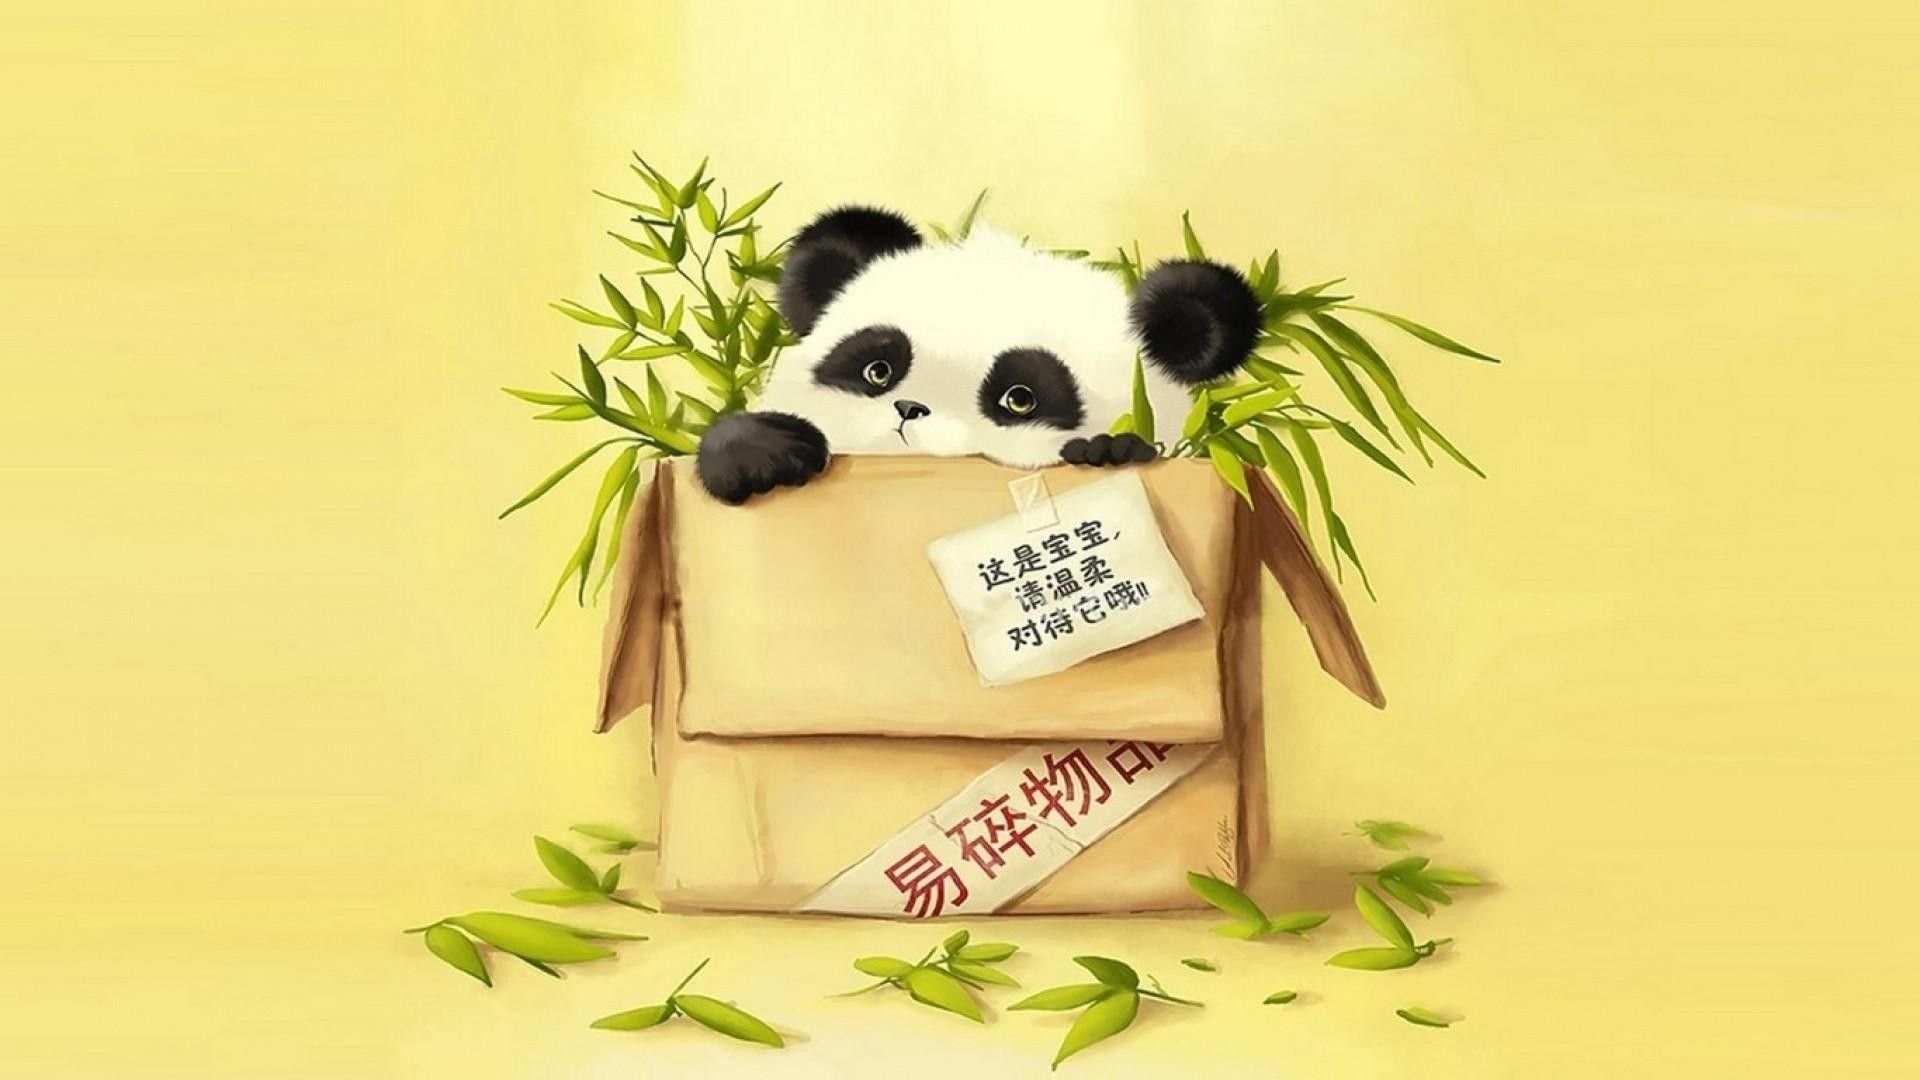 1920x1080 Wallpaper Of Pandas on WallpaperBat